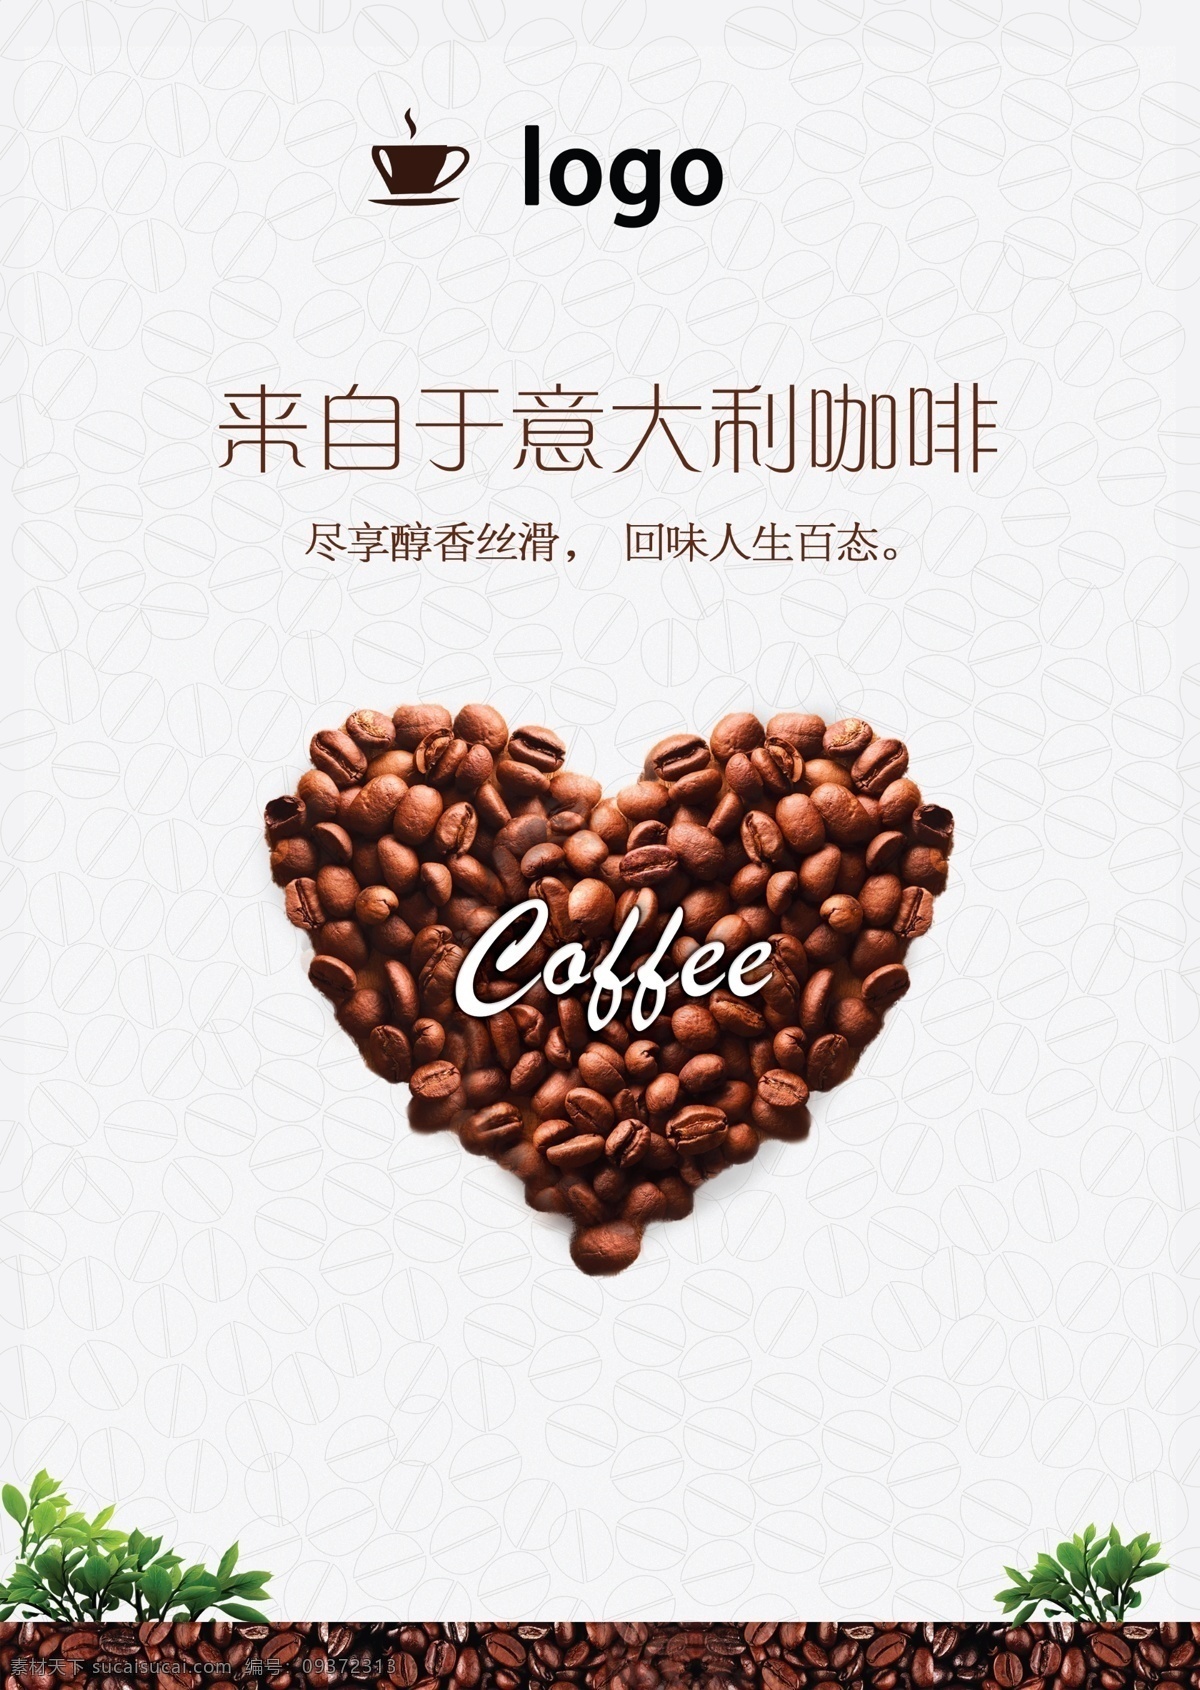 意 式 咖啡店 广告 宣传单 醇香咖啡素材 意大利 咖啡 海报 宣传